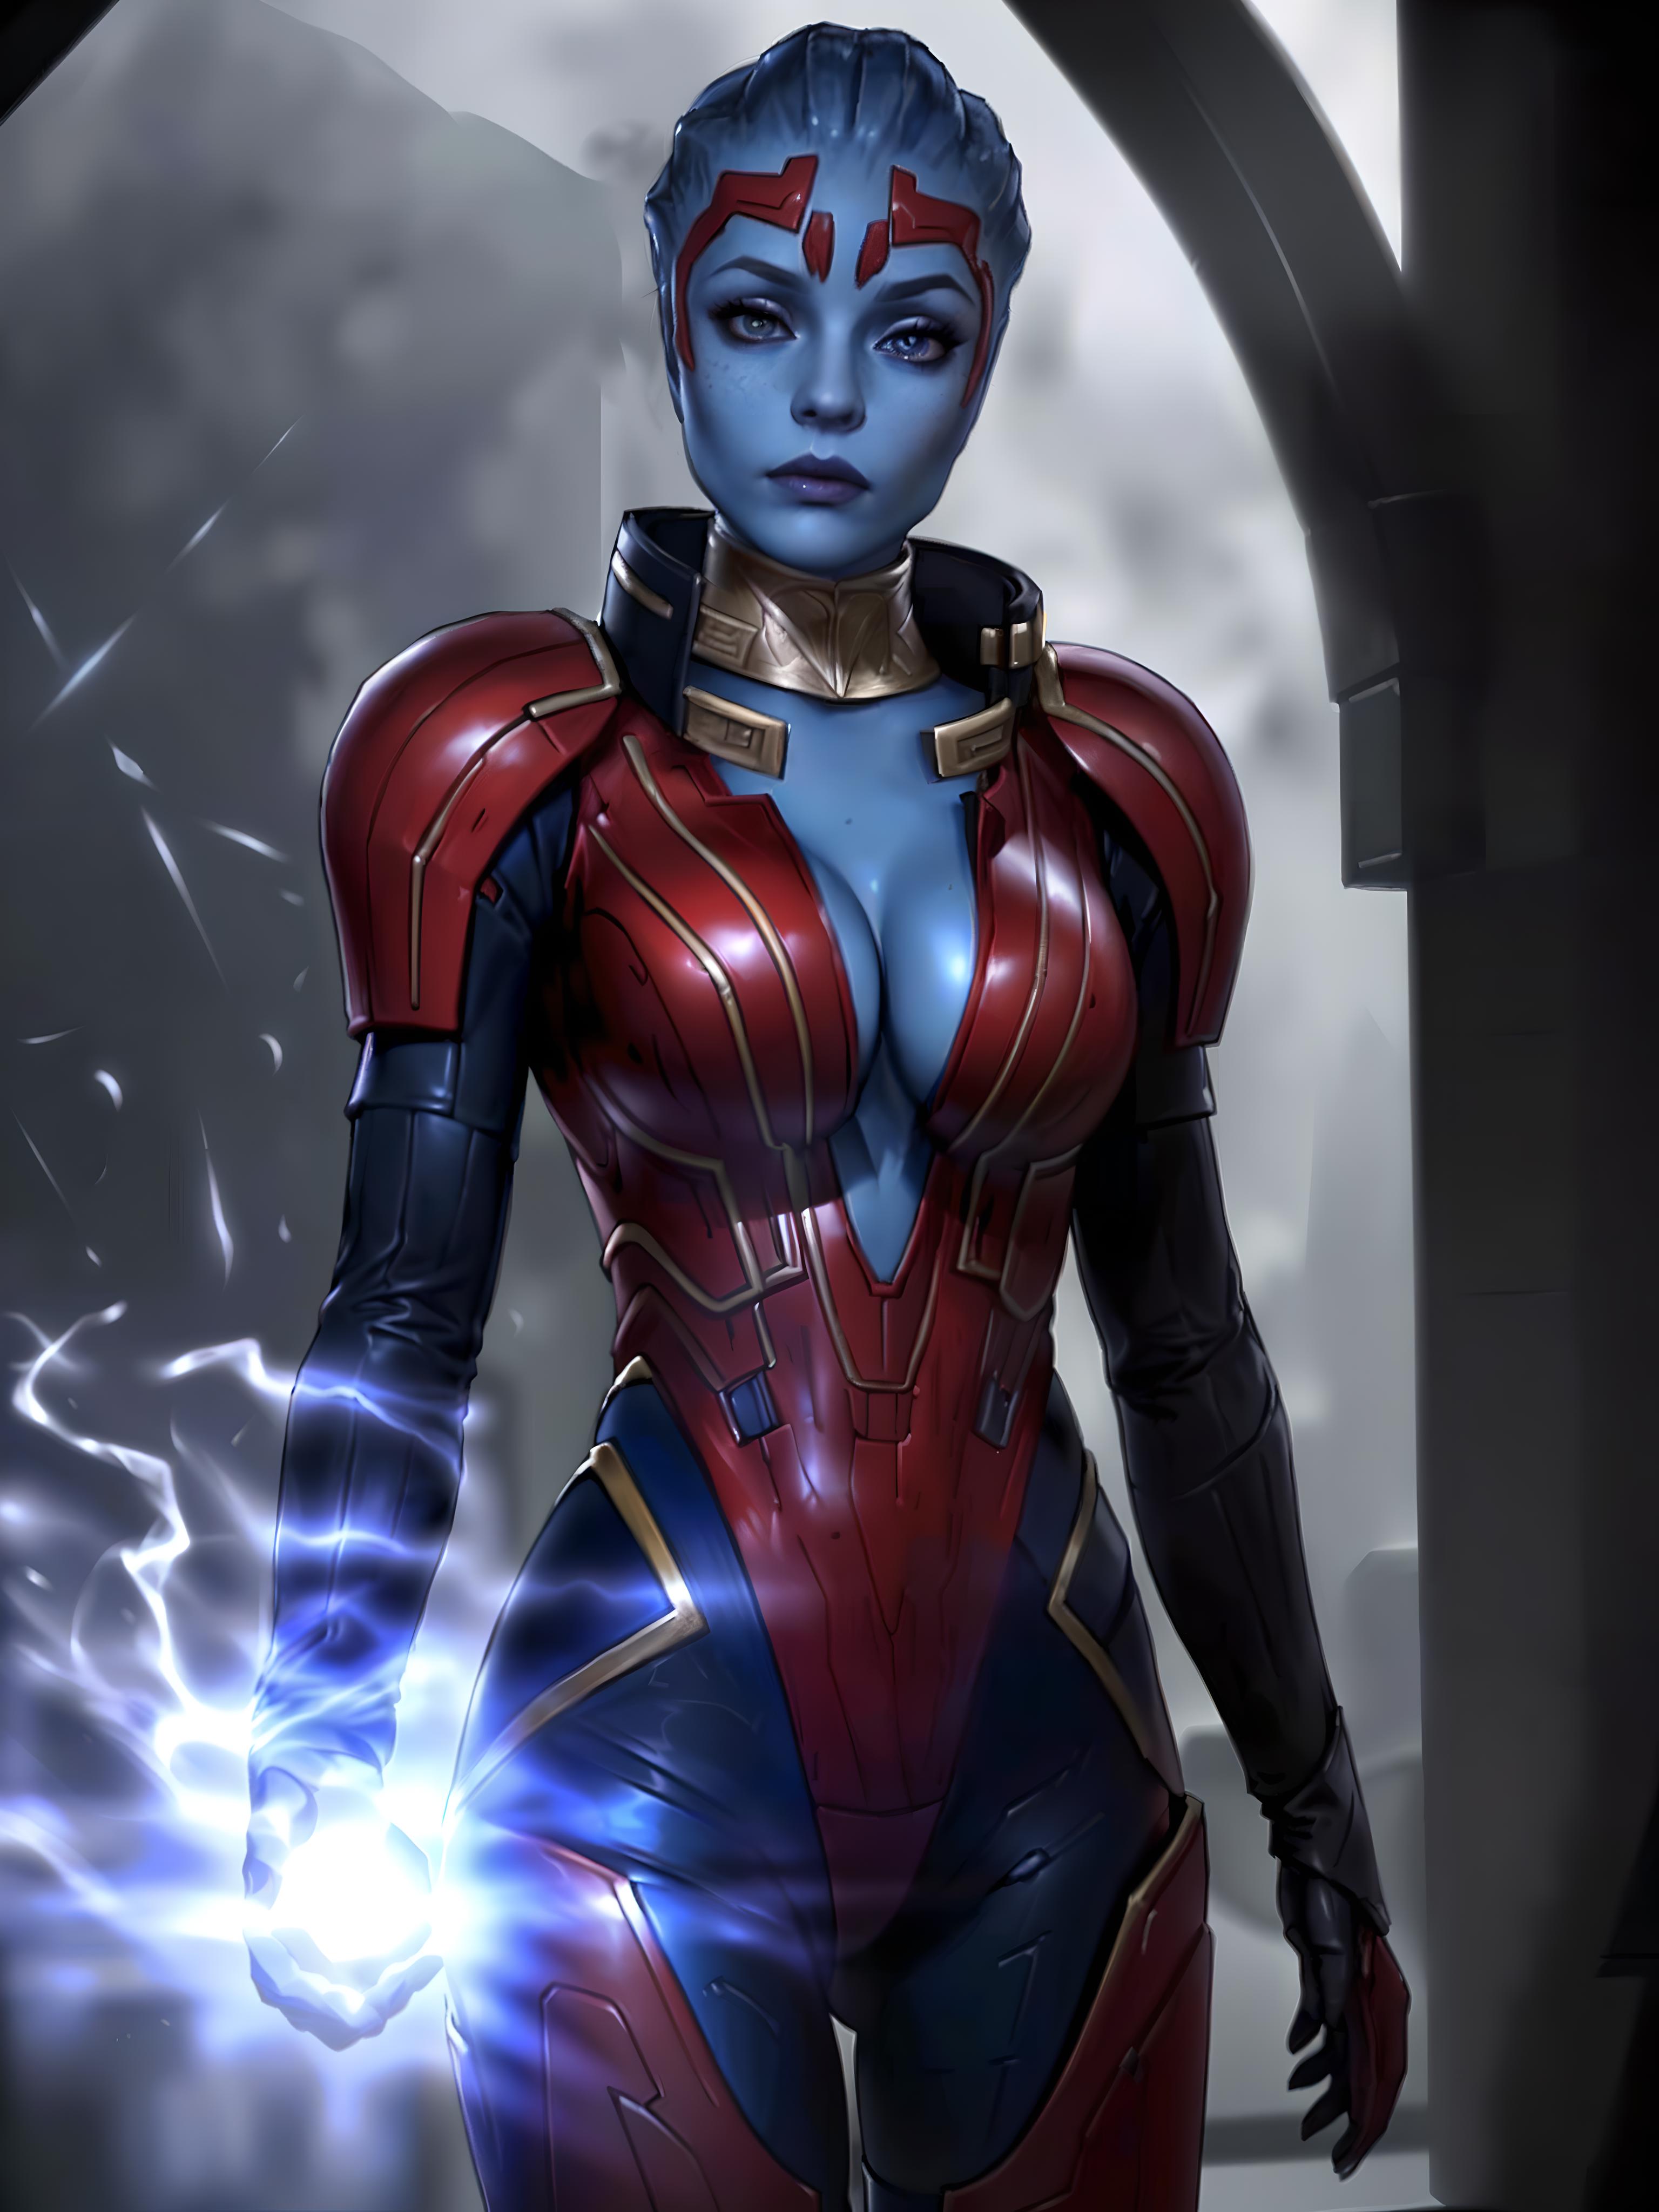 Samara (Mass Effect) LoRA image by Taloji